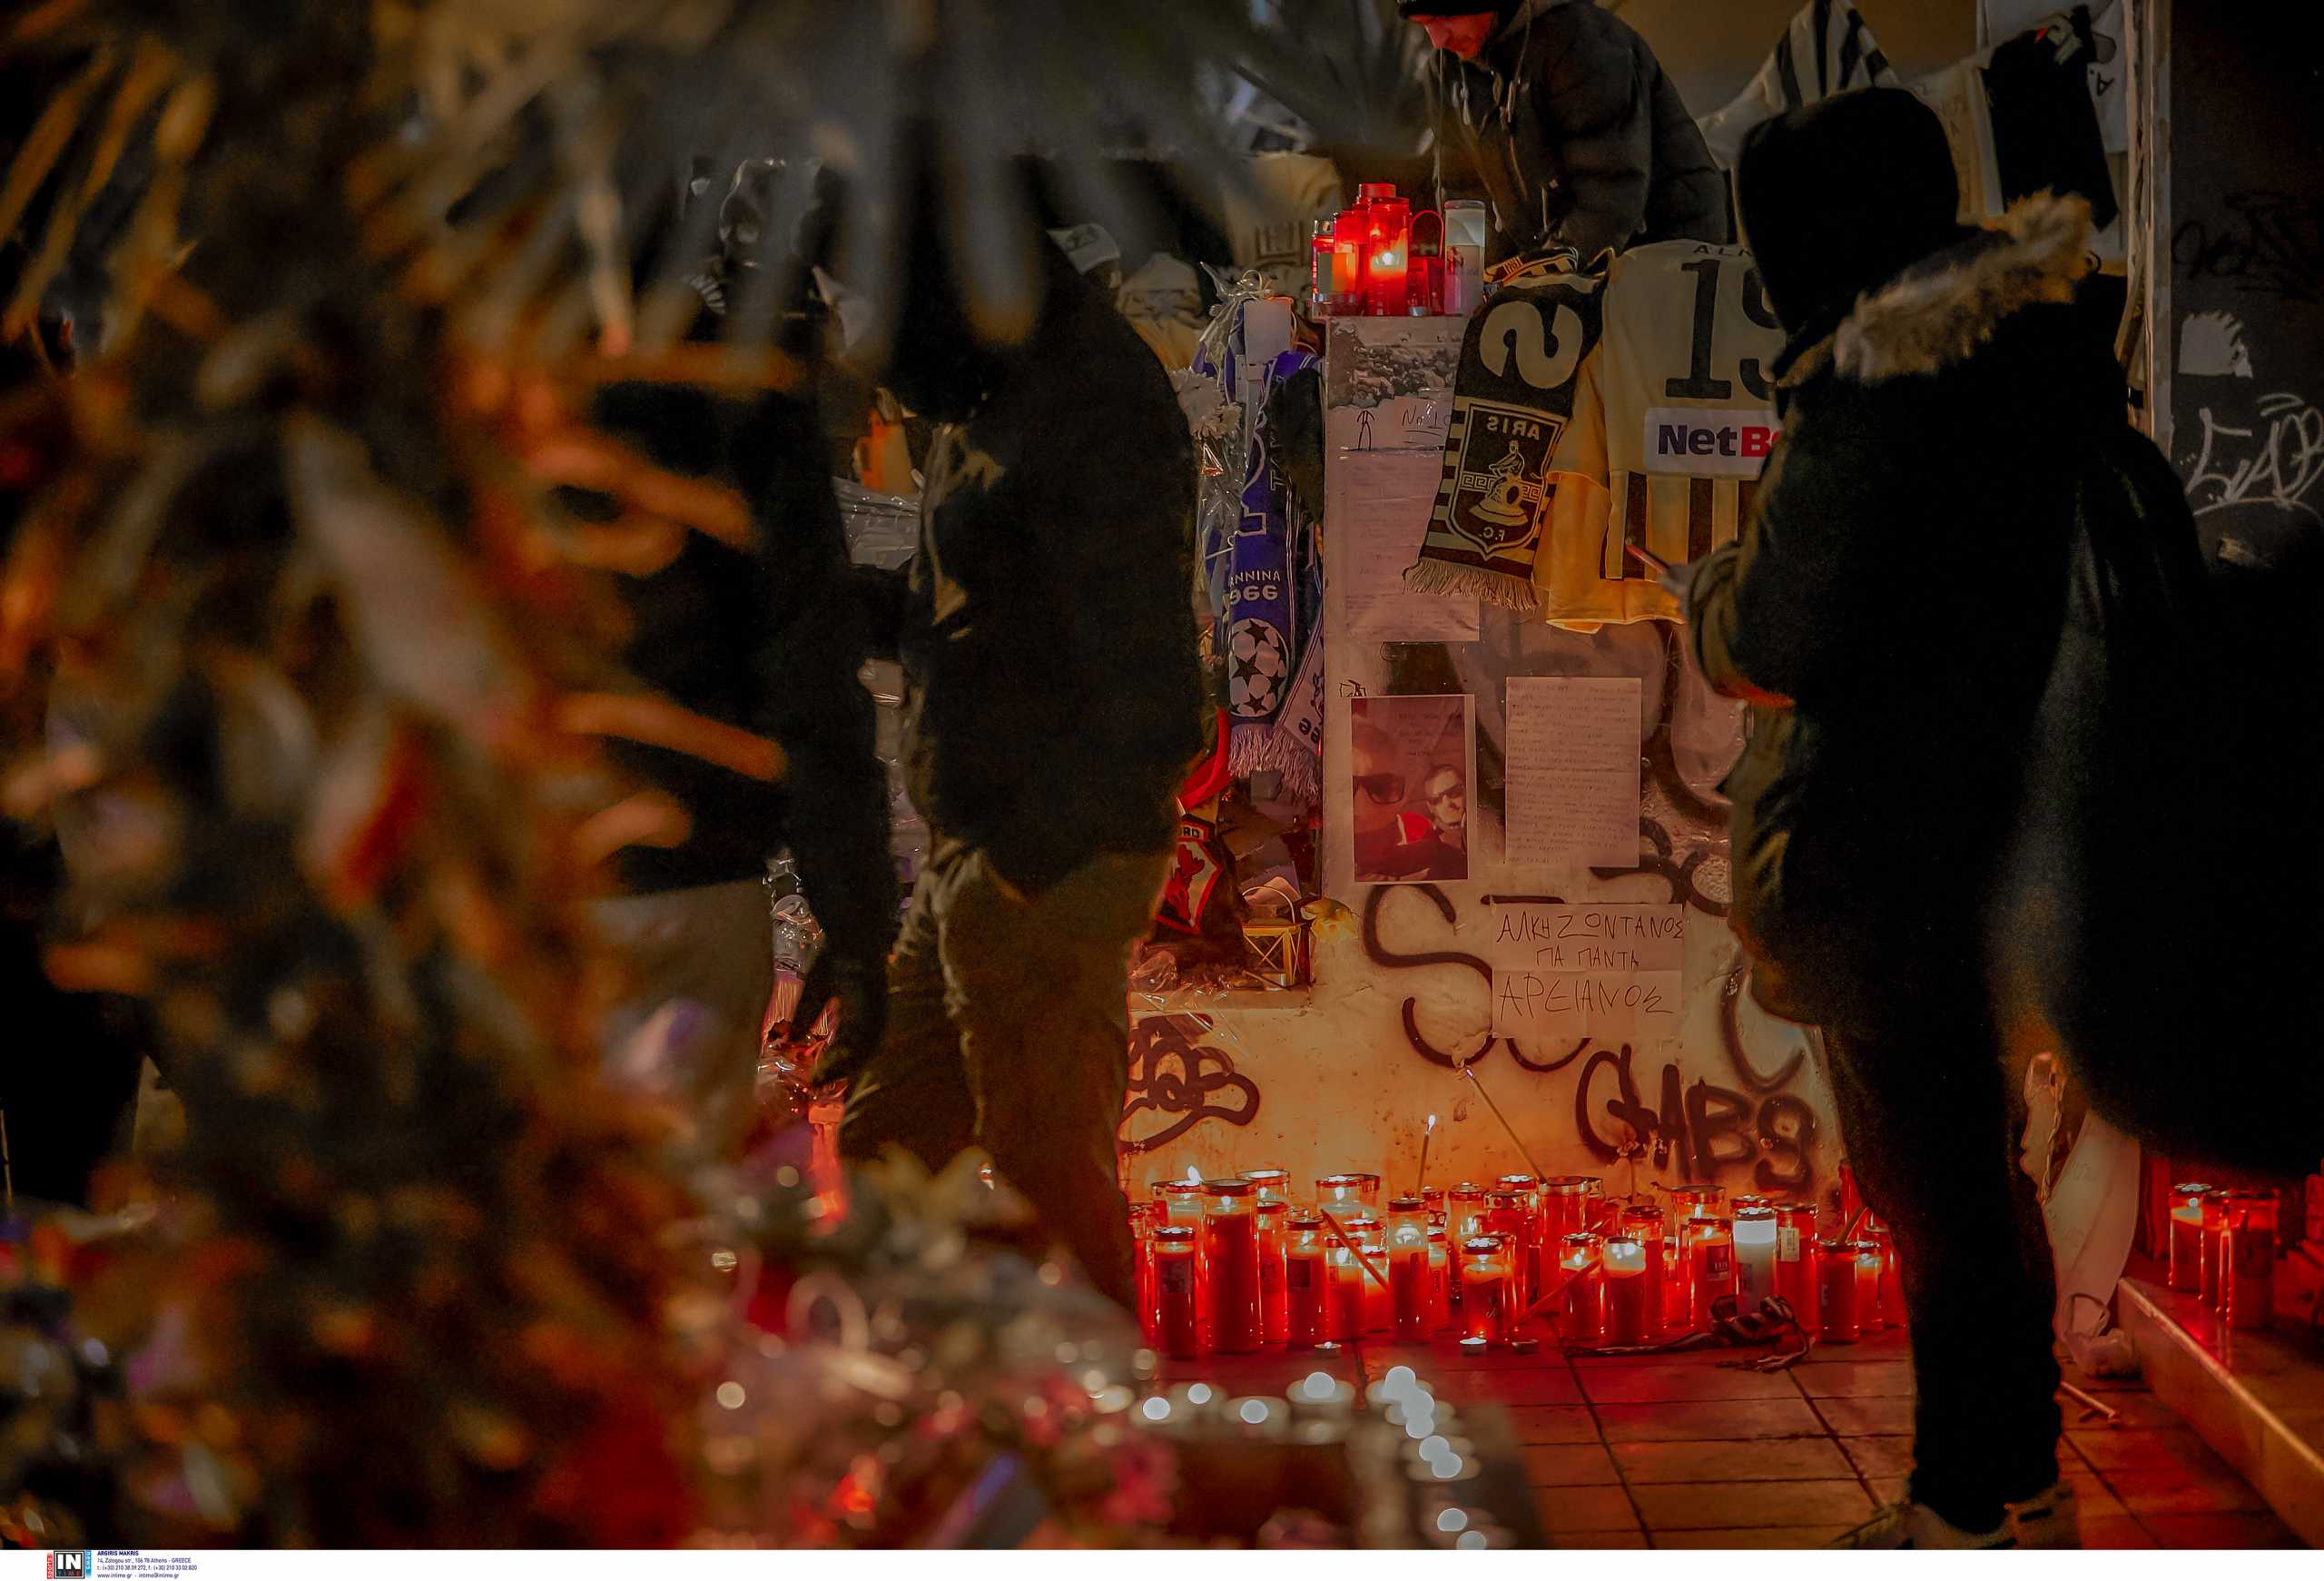 Δολοφονία Άλκη στη Θεσσαλονίκη: «Εγώ τον αναγνώρισα στο νεκροτομείο» περιγράφει ο θείος του